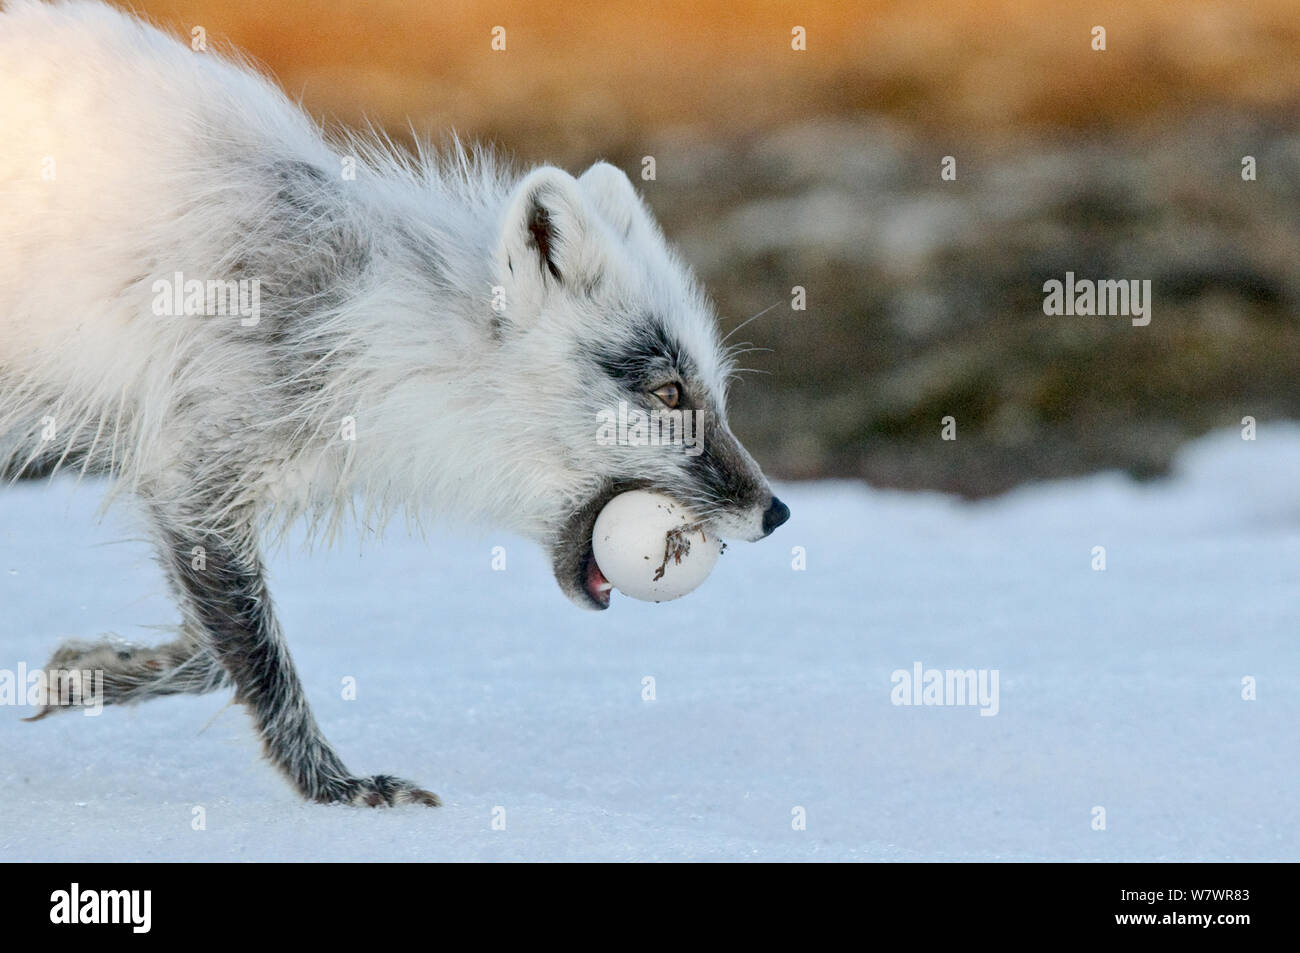 Arctic Fuchs (Vulpes lagopus) mit Snow goose Ei im Mund, Mitte mausern sich von Winter zu Sommer Pelz, Wrangel Insel, fernöstlichen Russland. Stockfoto